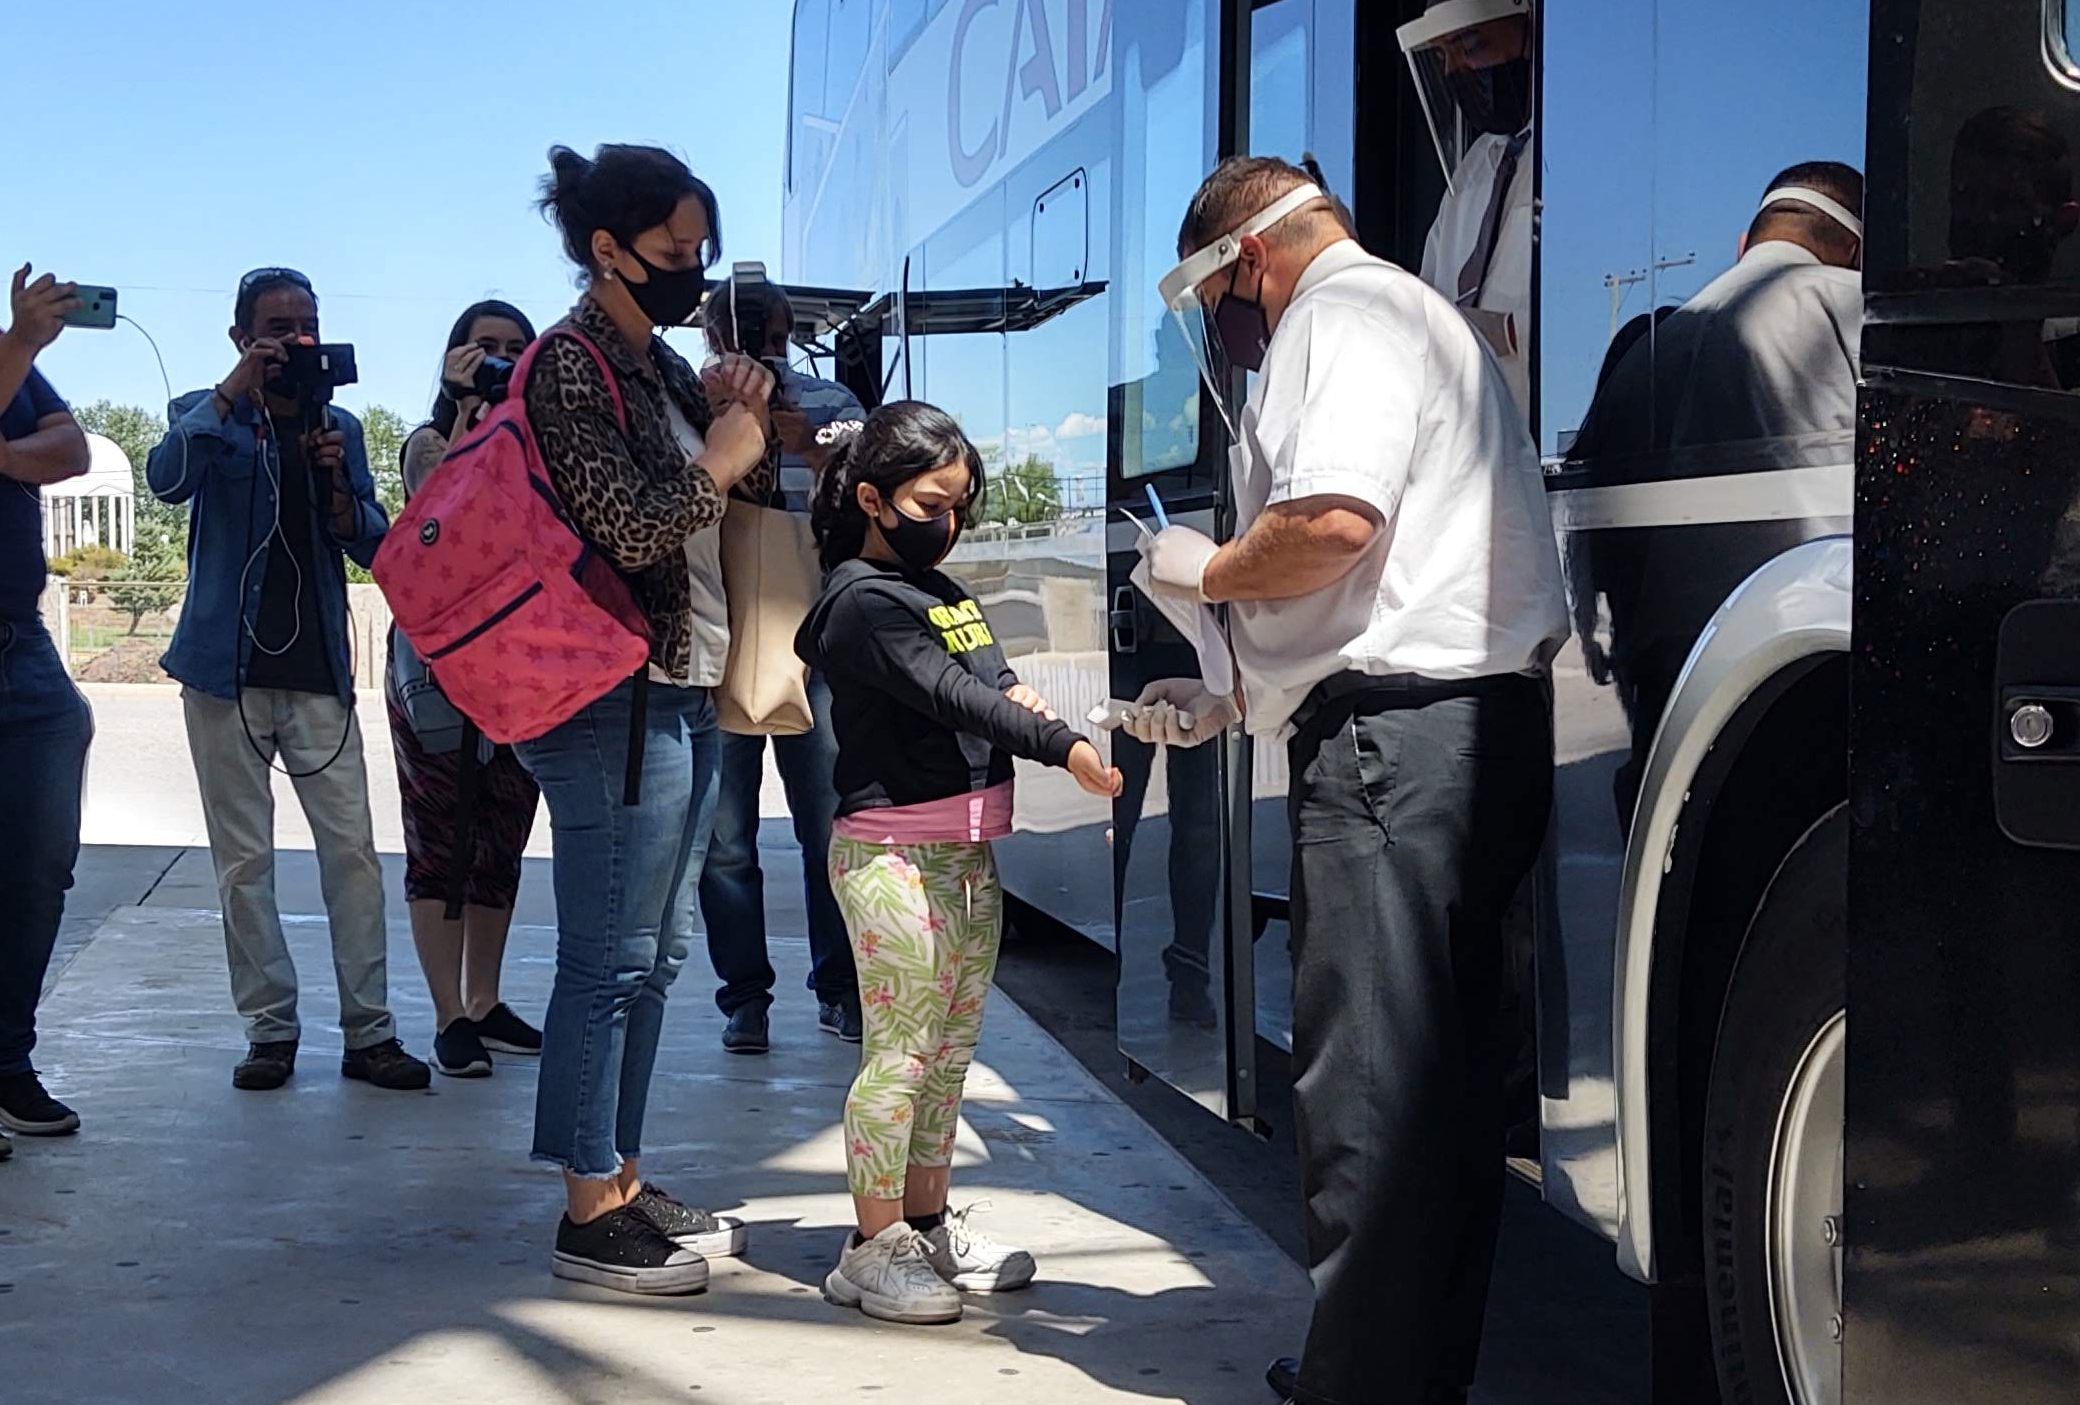 Con mucha expectativa llegó a San Luis el primer colectivo de pasajeros desde que comenzó la pandemia